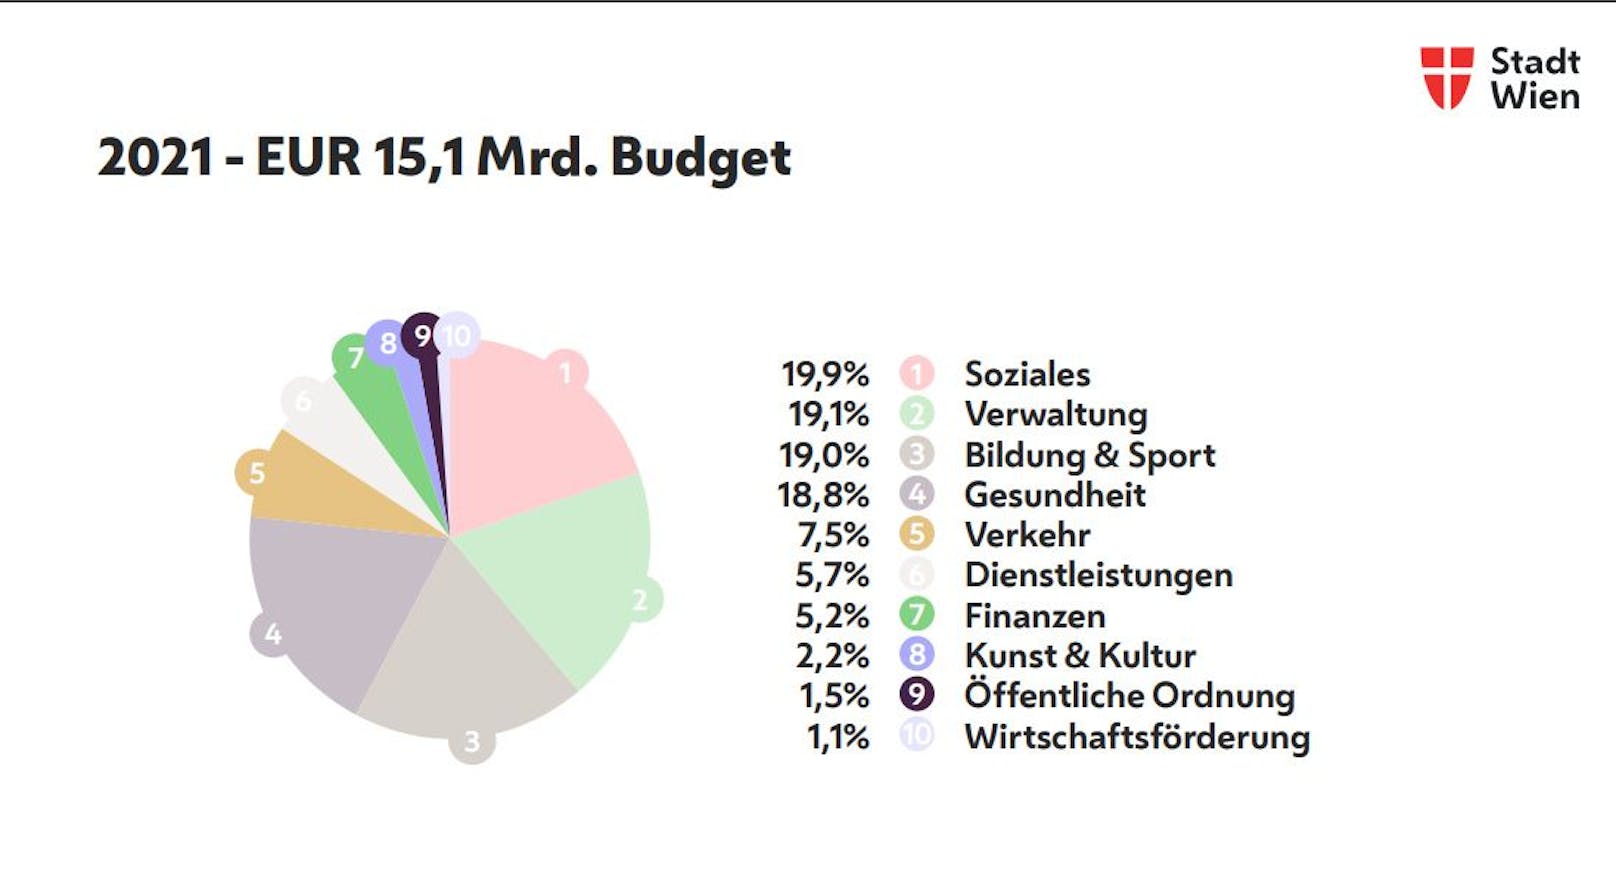 Die größten Brocken im Wien-Budget 2021 sind Soziales, Verwaltung, Bildung und Sport und Gesundheit.